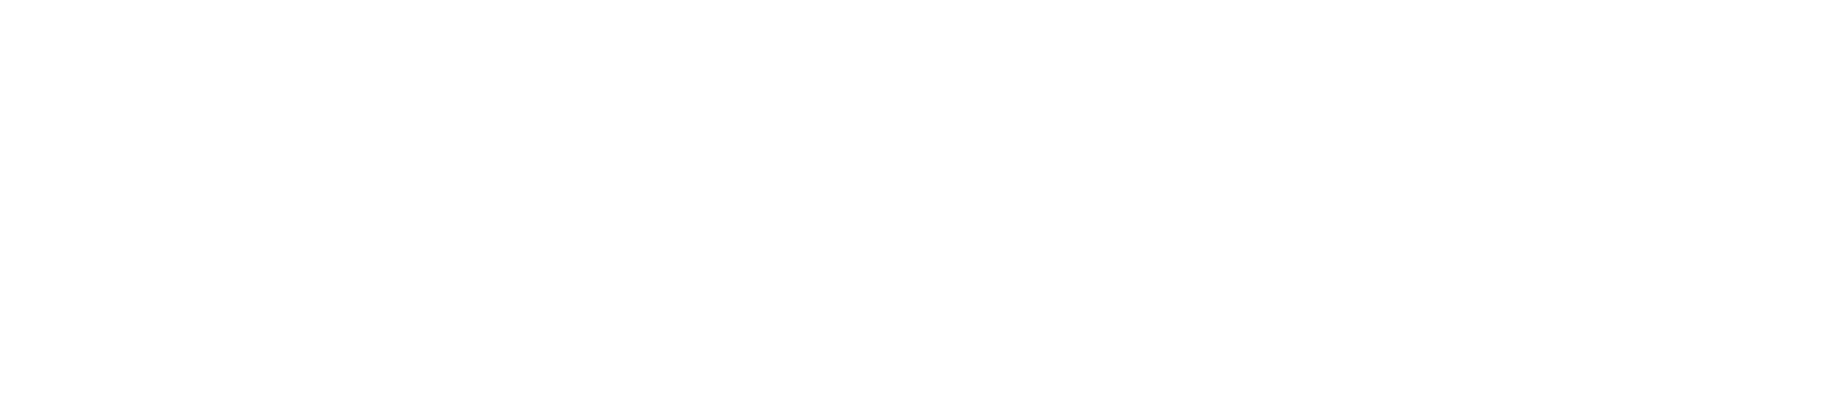 Bracalente Manufacturing Group des de 1950